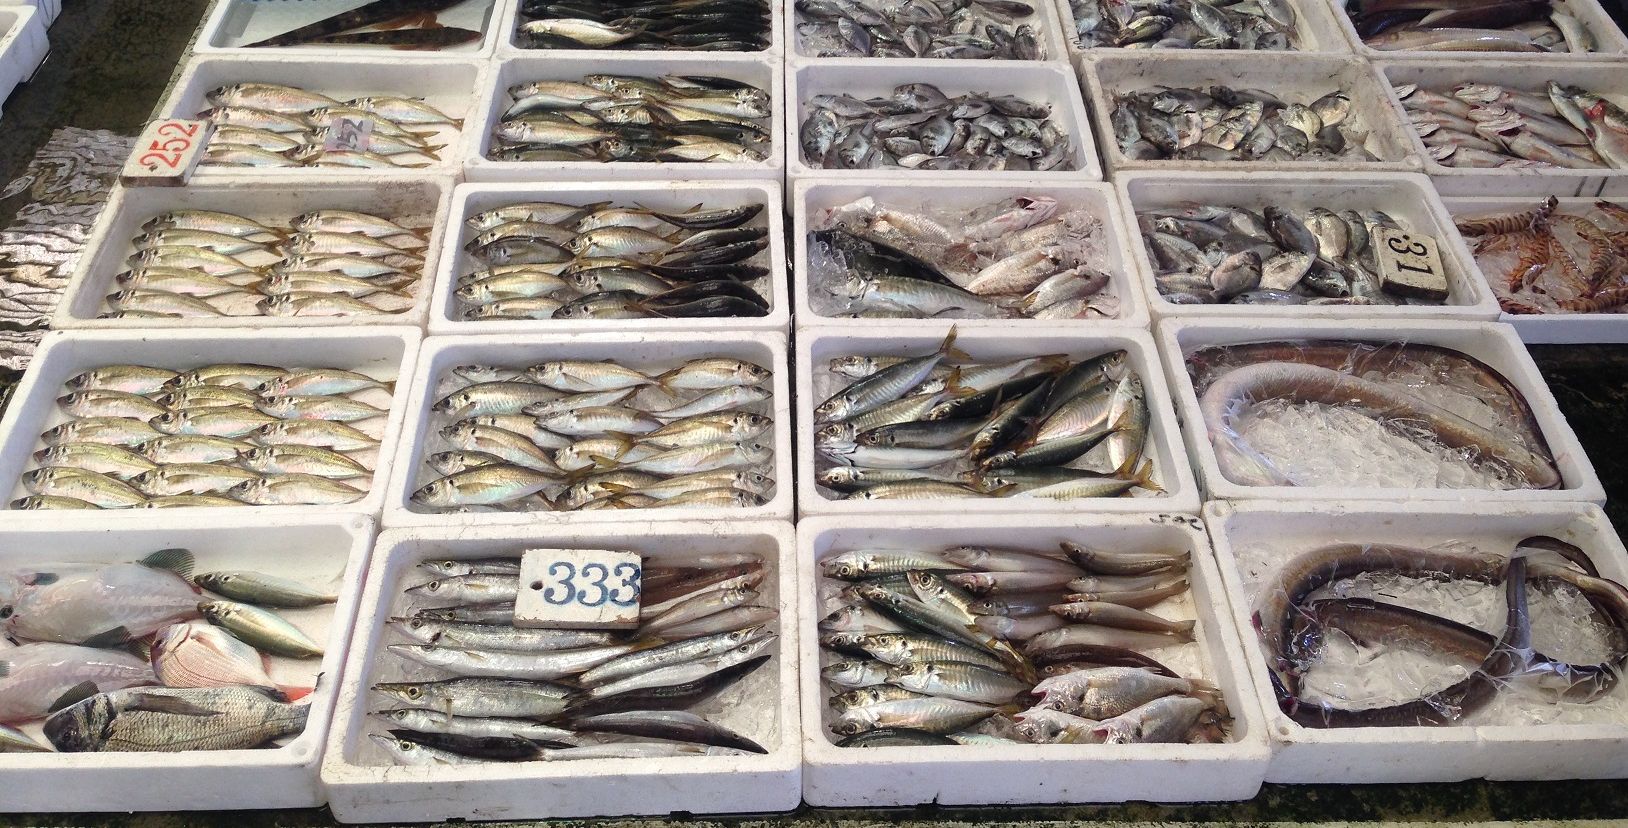 発泡スチロールにはいり様々な種類の魚が並んだ市場の写真